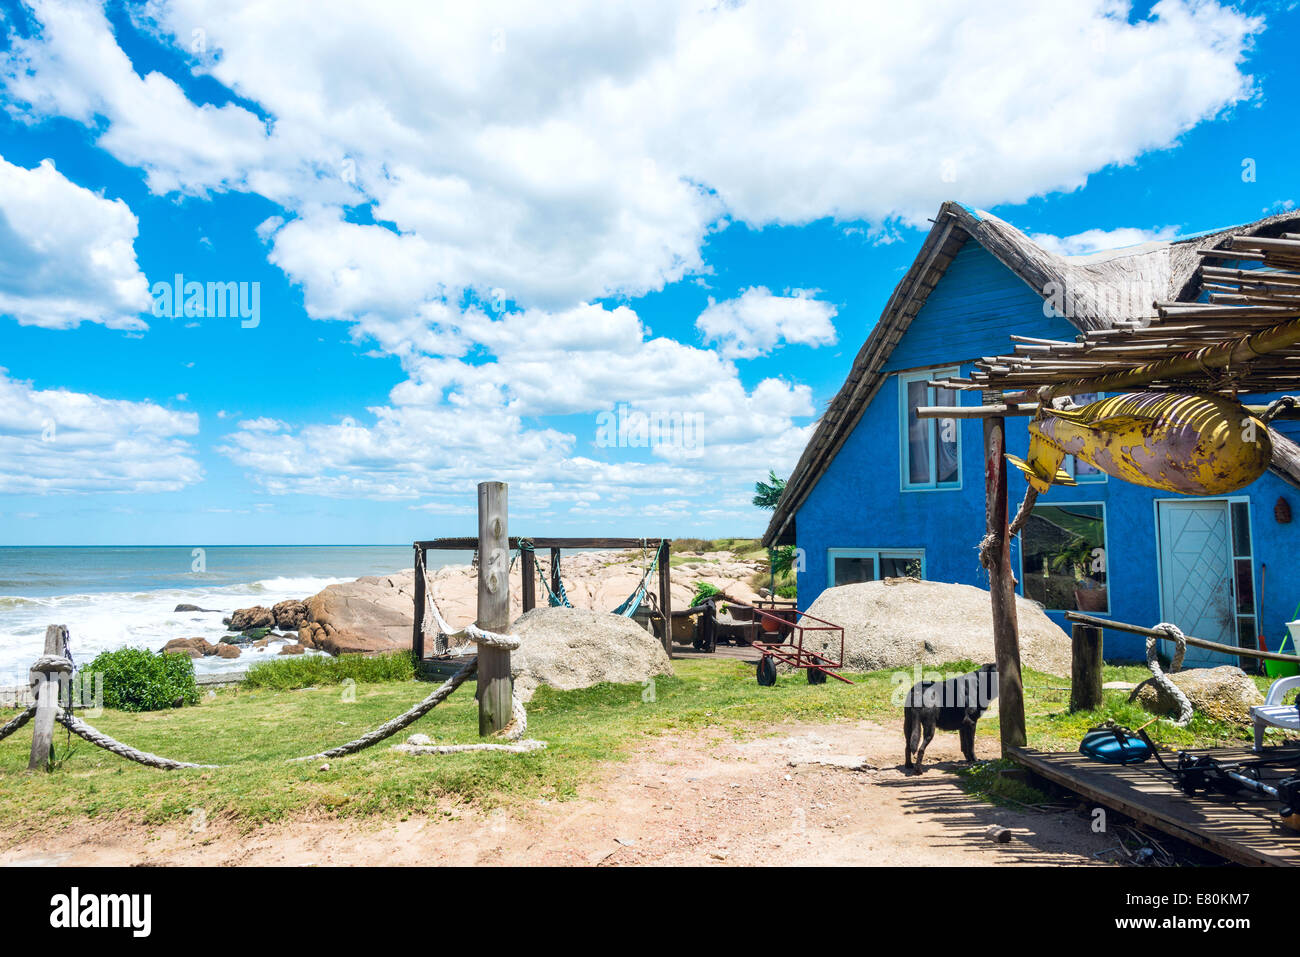 Maisons colorées typiques sur la pittoresque plage de Punta del Diablo, lieu touristique très populaire en Uruguay Banque D'Images